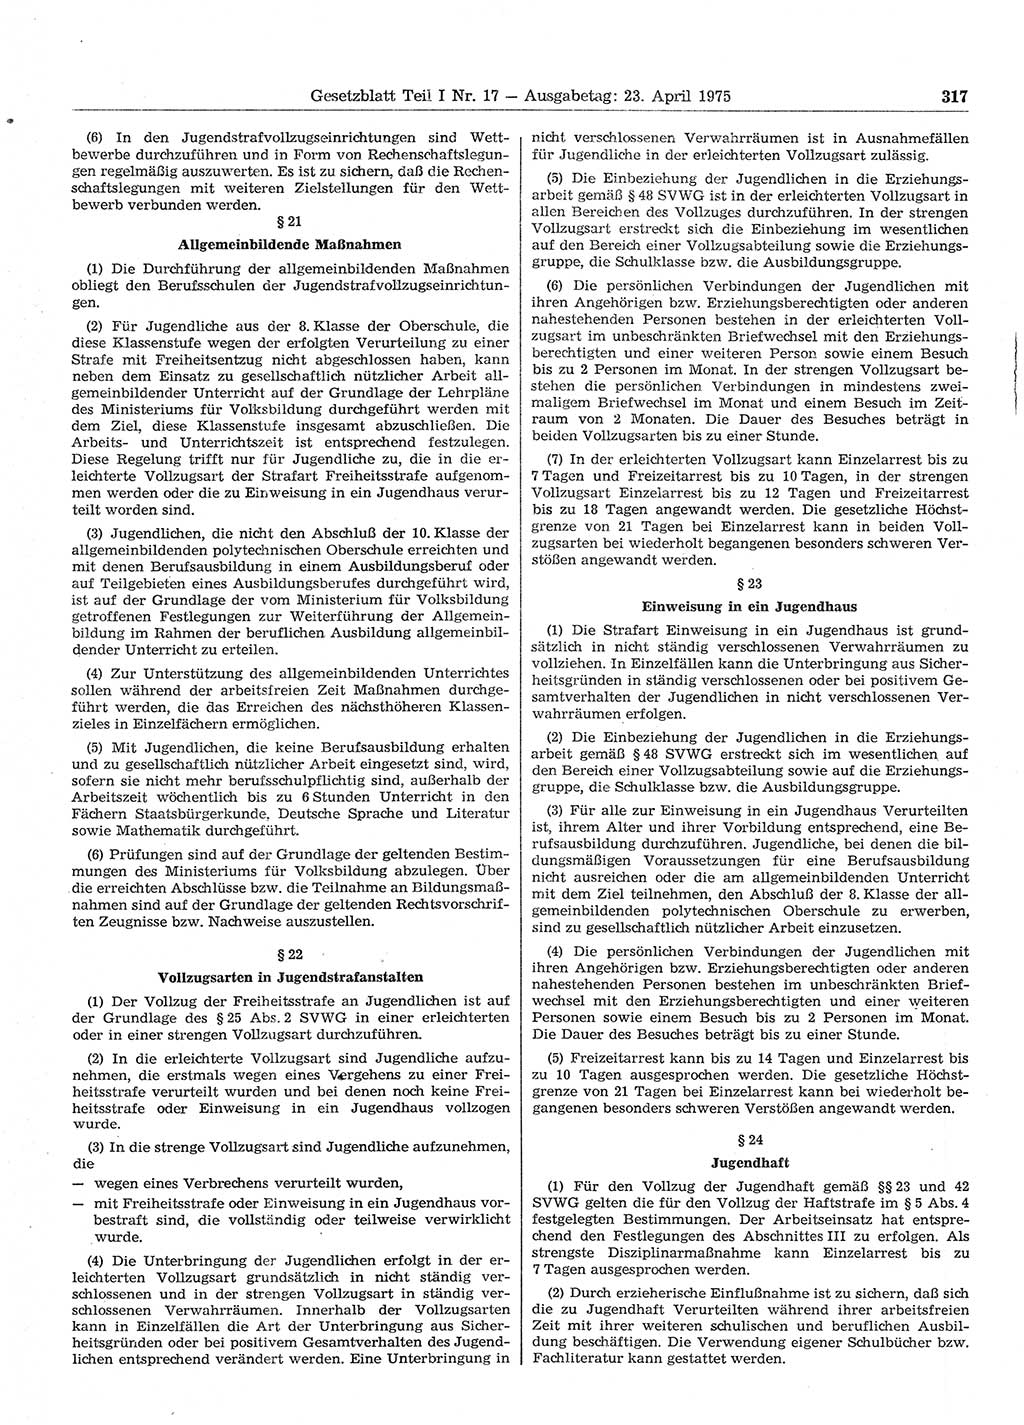 Gesetzblatt (GBl.) der Deutschen Demokratischen Republik (DDR) Teil Ⅰ 1975, Seite 317 (GBl. DDR Ⅰ 1975, S. 317)